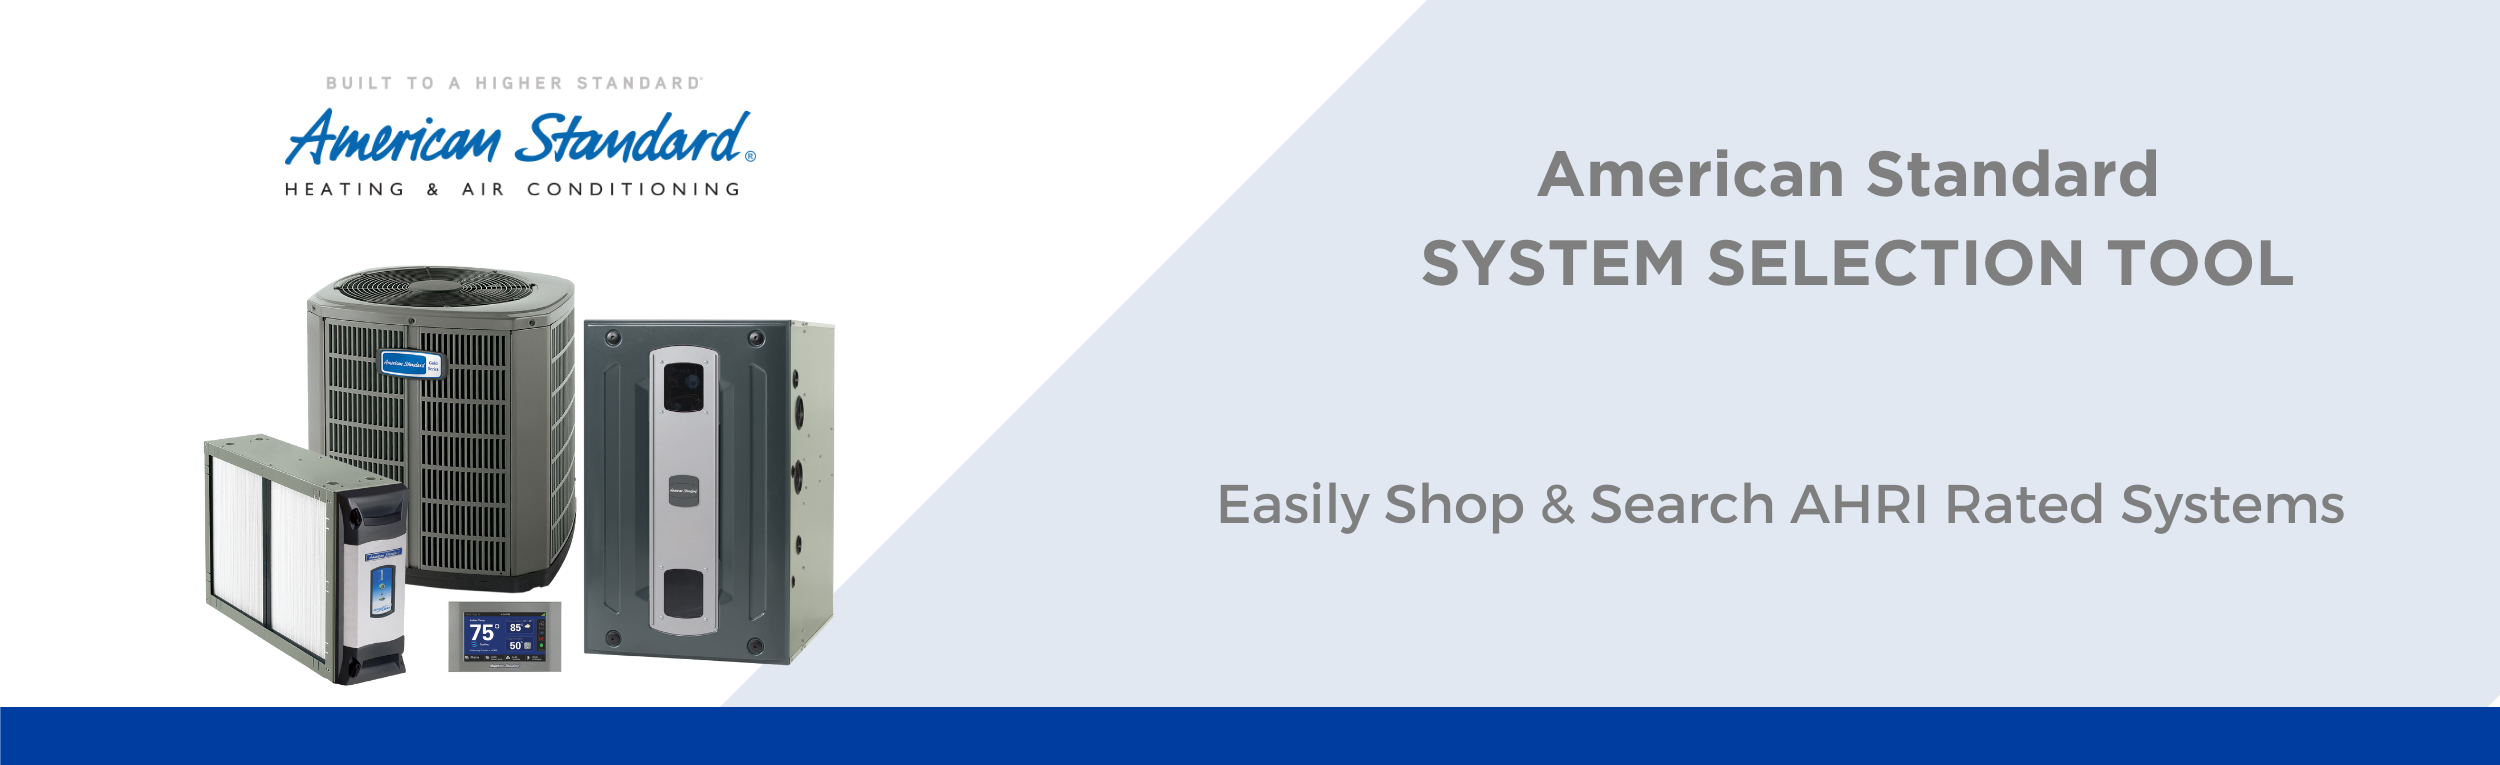 AMSTD System Selection Tool Slider.png